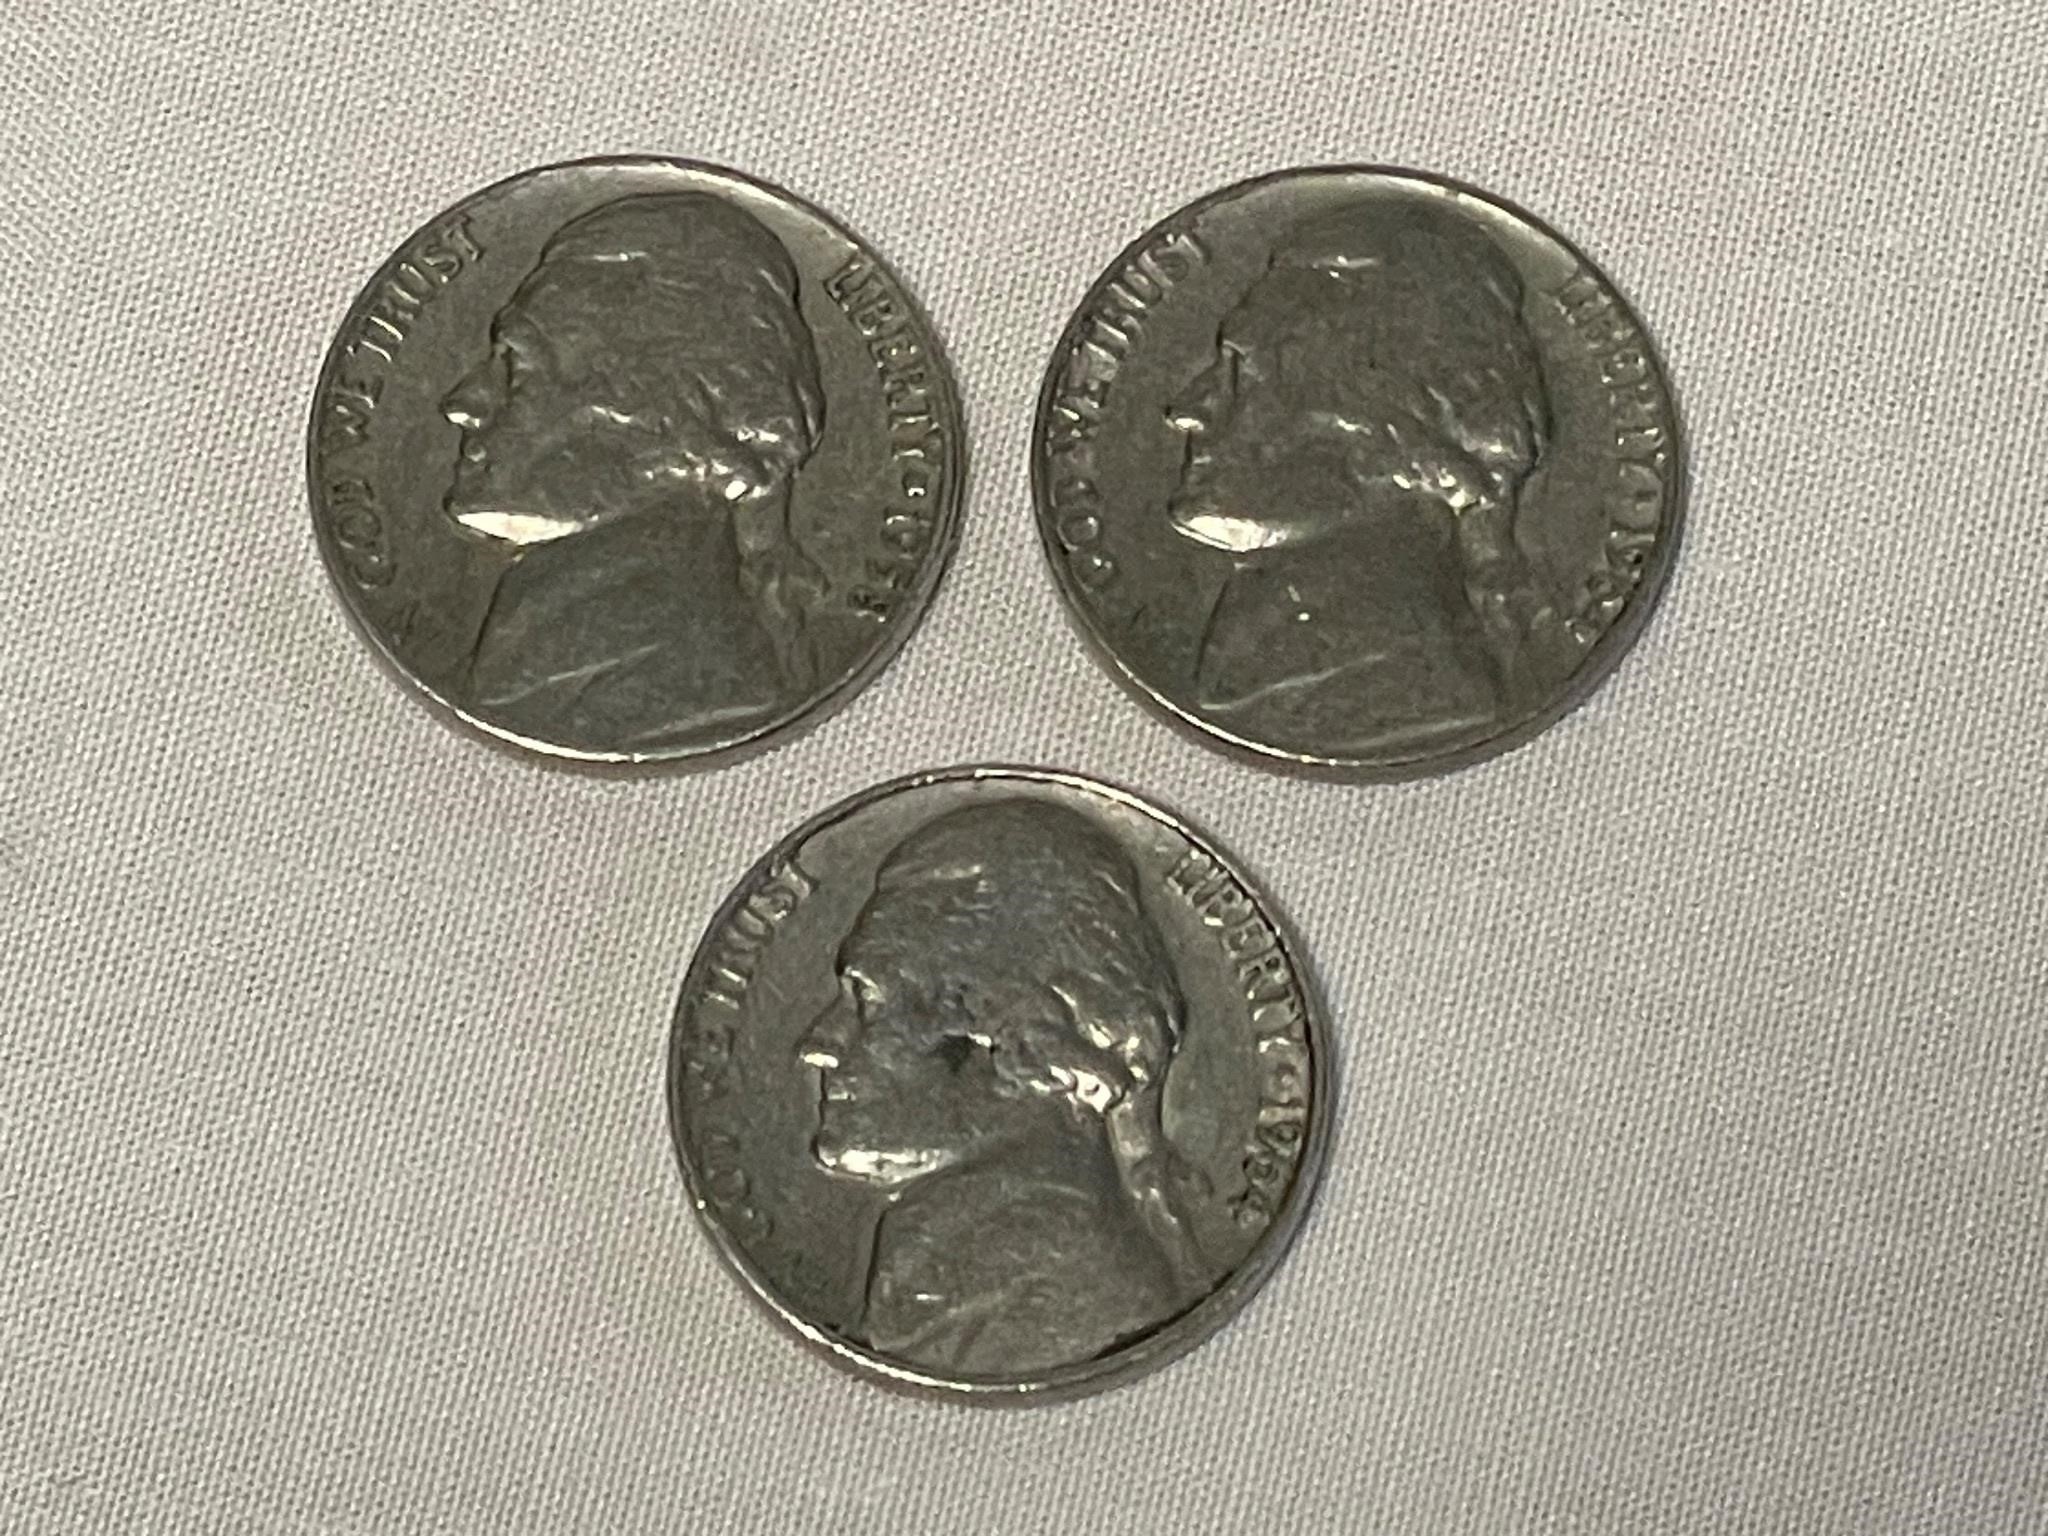 3 1964 US Nickels